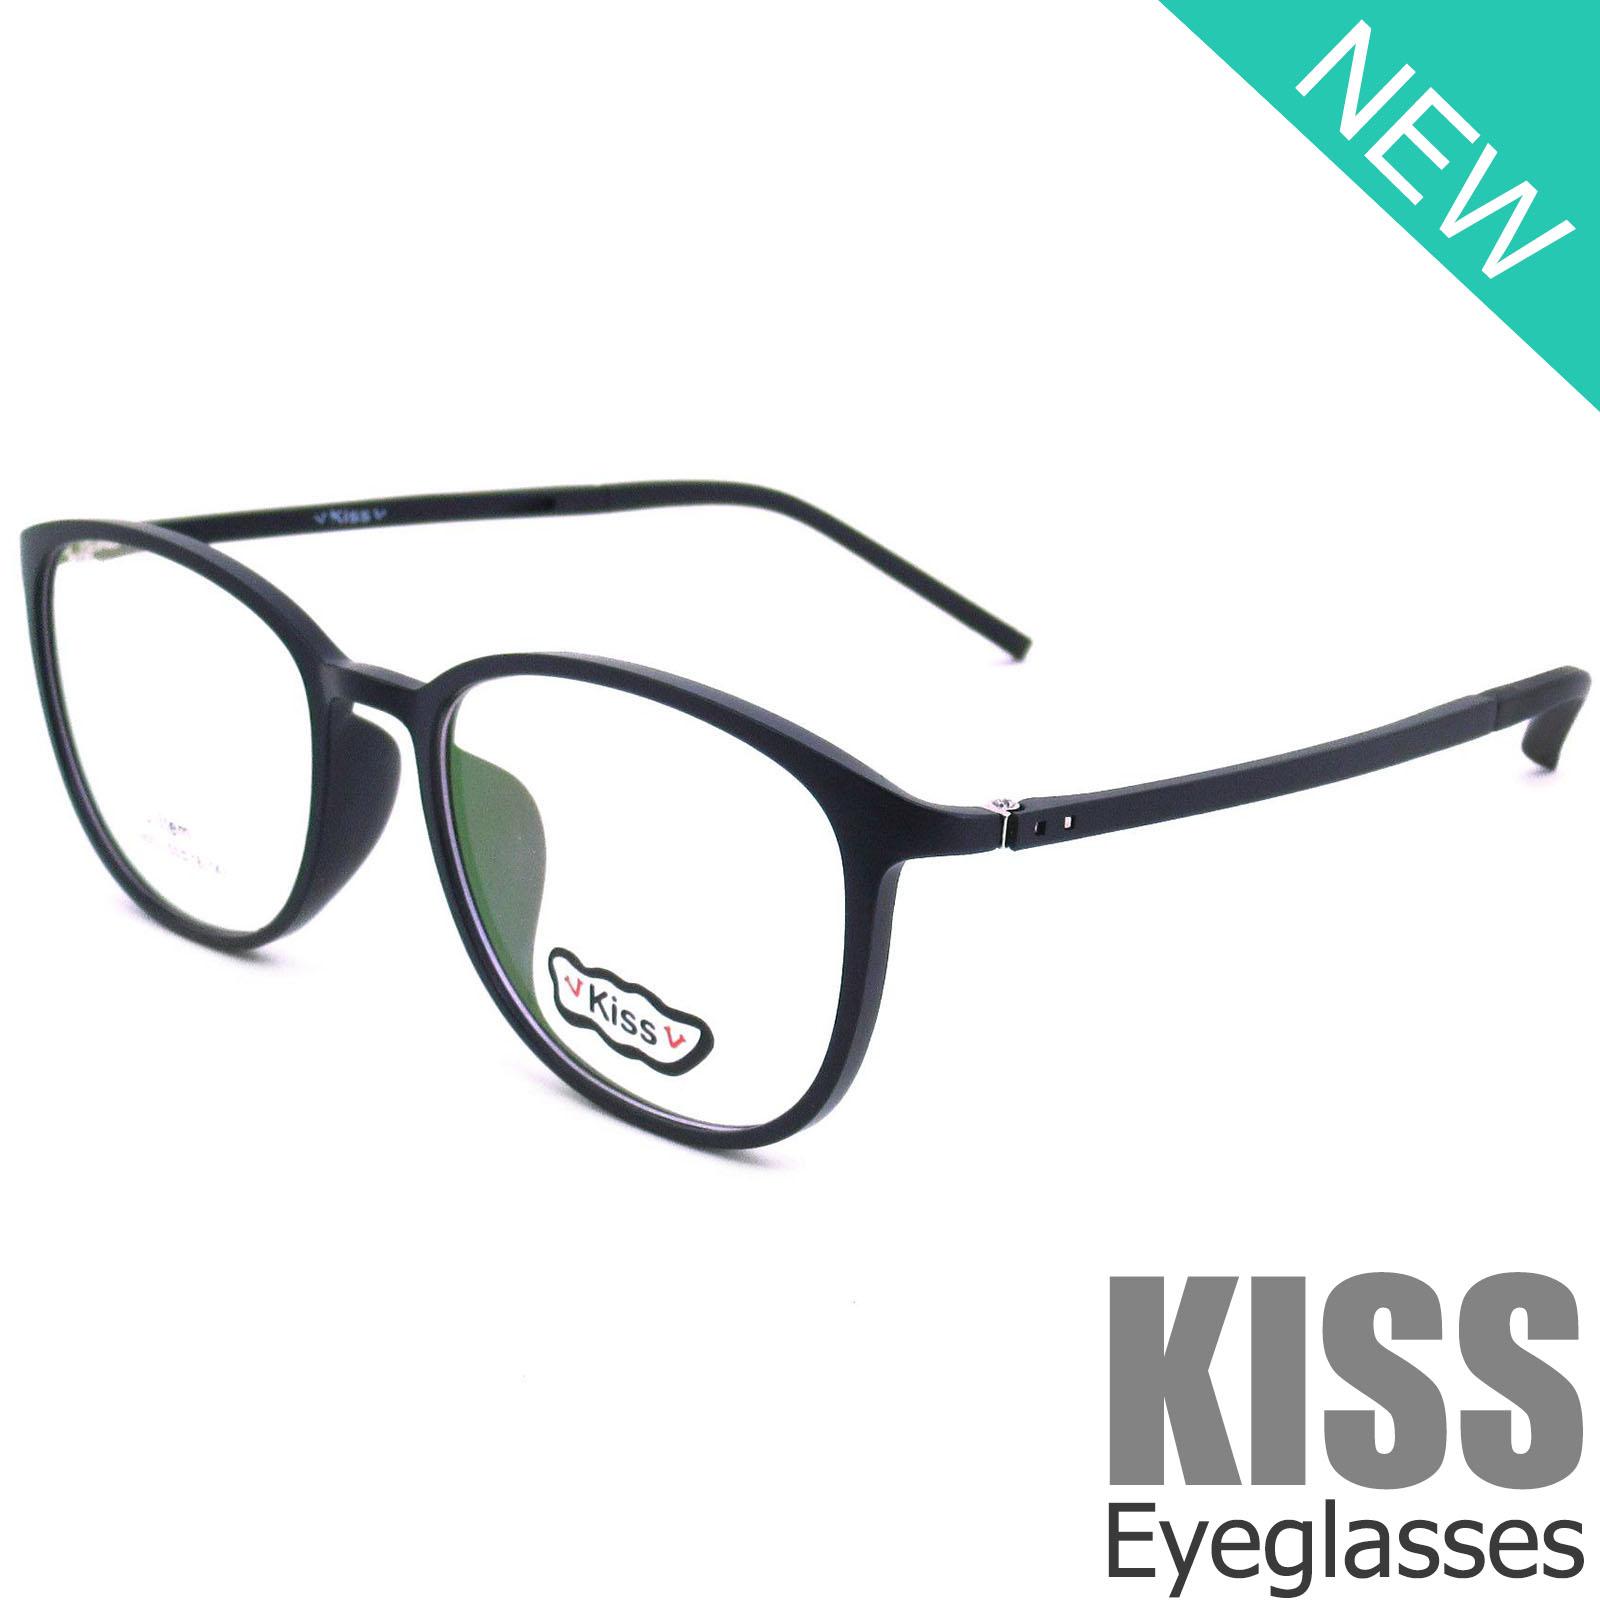 Korea แว่นตา รุ่น KISS DS 9002 C-12 กรอบแว่นตา กรอบเต็ม Square ทรงสี่เหลี่ยม ขาข้อต่อ วัสดุ ทีอาร์-90 (สำหรับตัดเลนส์) สวมใส่สบาย น้ำหนักเบา ไม่ตกเทรนด์ มีความแข็งแรงทนทาน Full frame Eyeglass Leg joints TR-90 material Eyewear Top Glasses